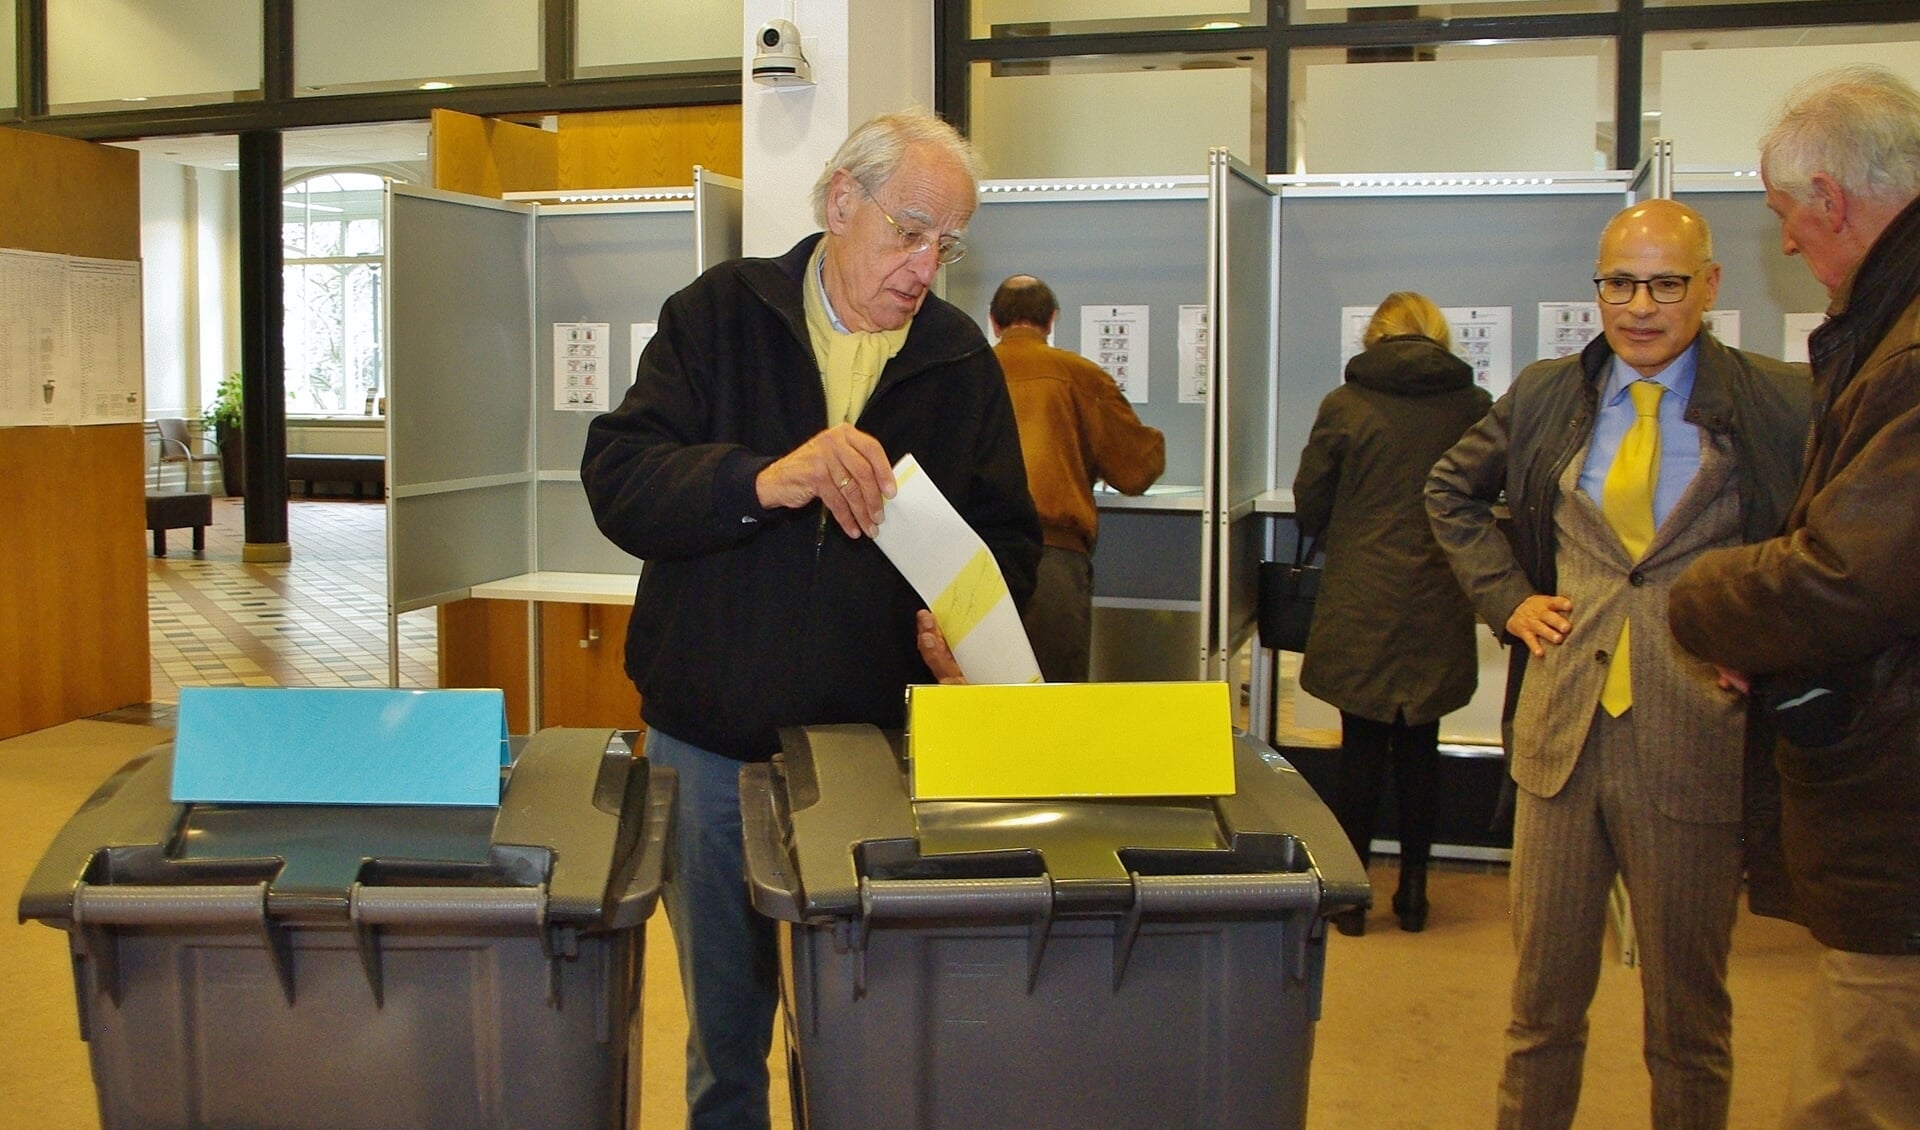 Traditiegetrouw kent de gemeente Oegstgeest een hoge opkomst bij verkiezingen. In het gemeentehuis werd vanmorgen druk gestemd, en kwam burgemeester Jaensch het stembureau een kort bezoek brengen.